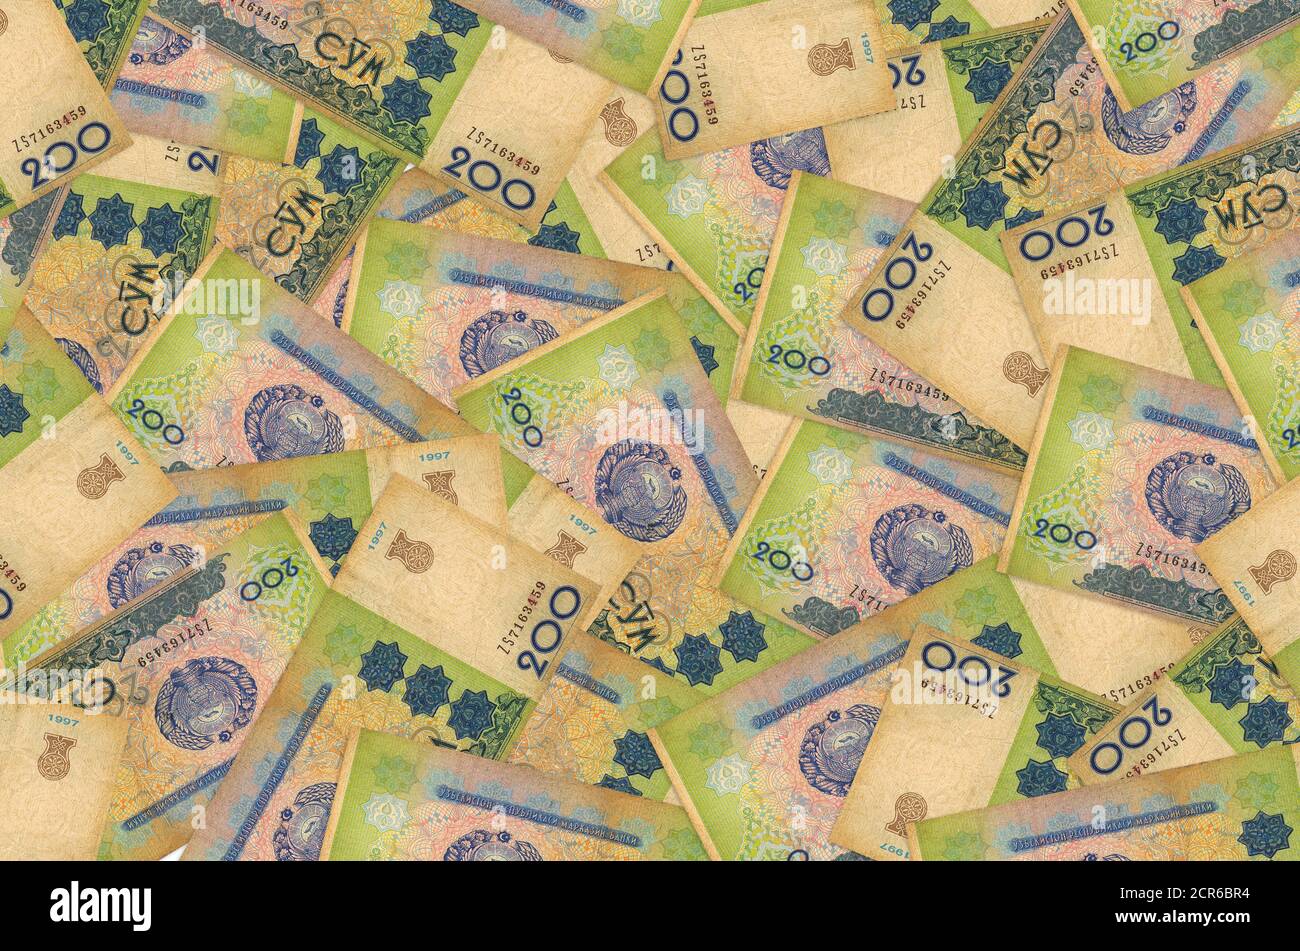 200 les factures d'ouzbek se trouvent dans une pile. Fond conceptuel riche de la vie. Beaucoup d'argent Banque D'Images